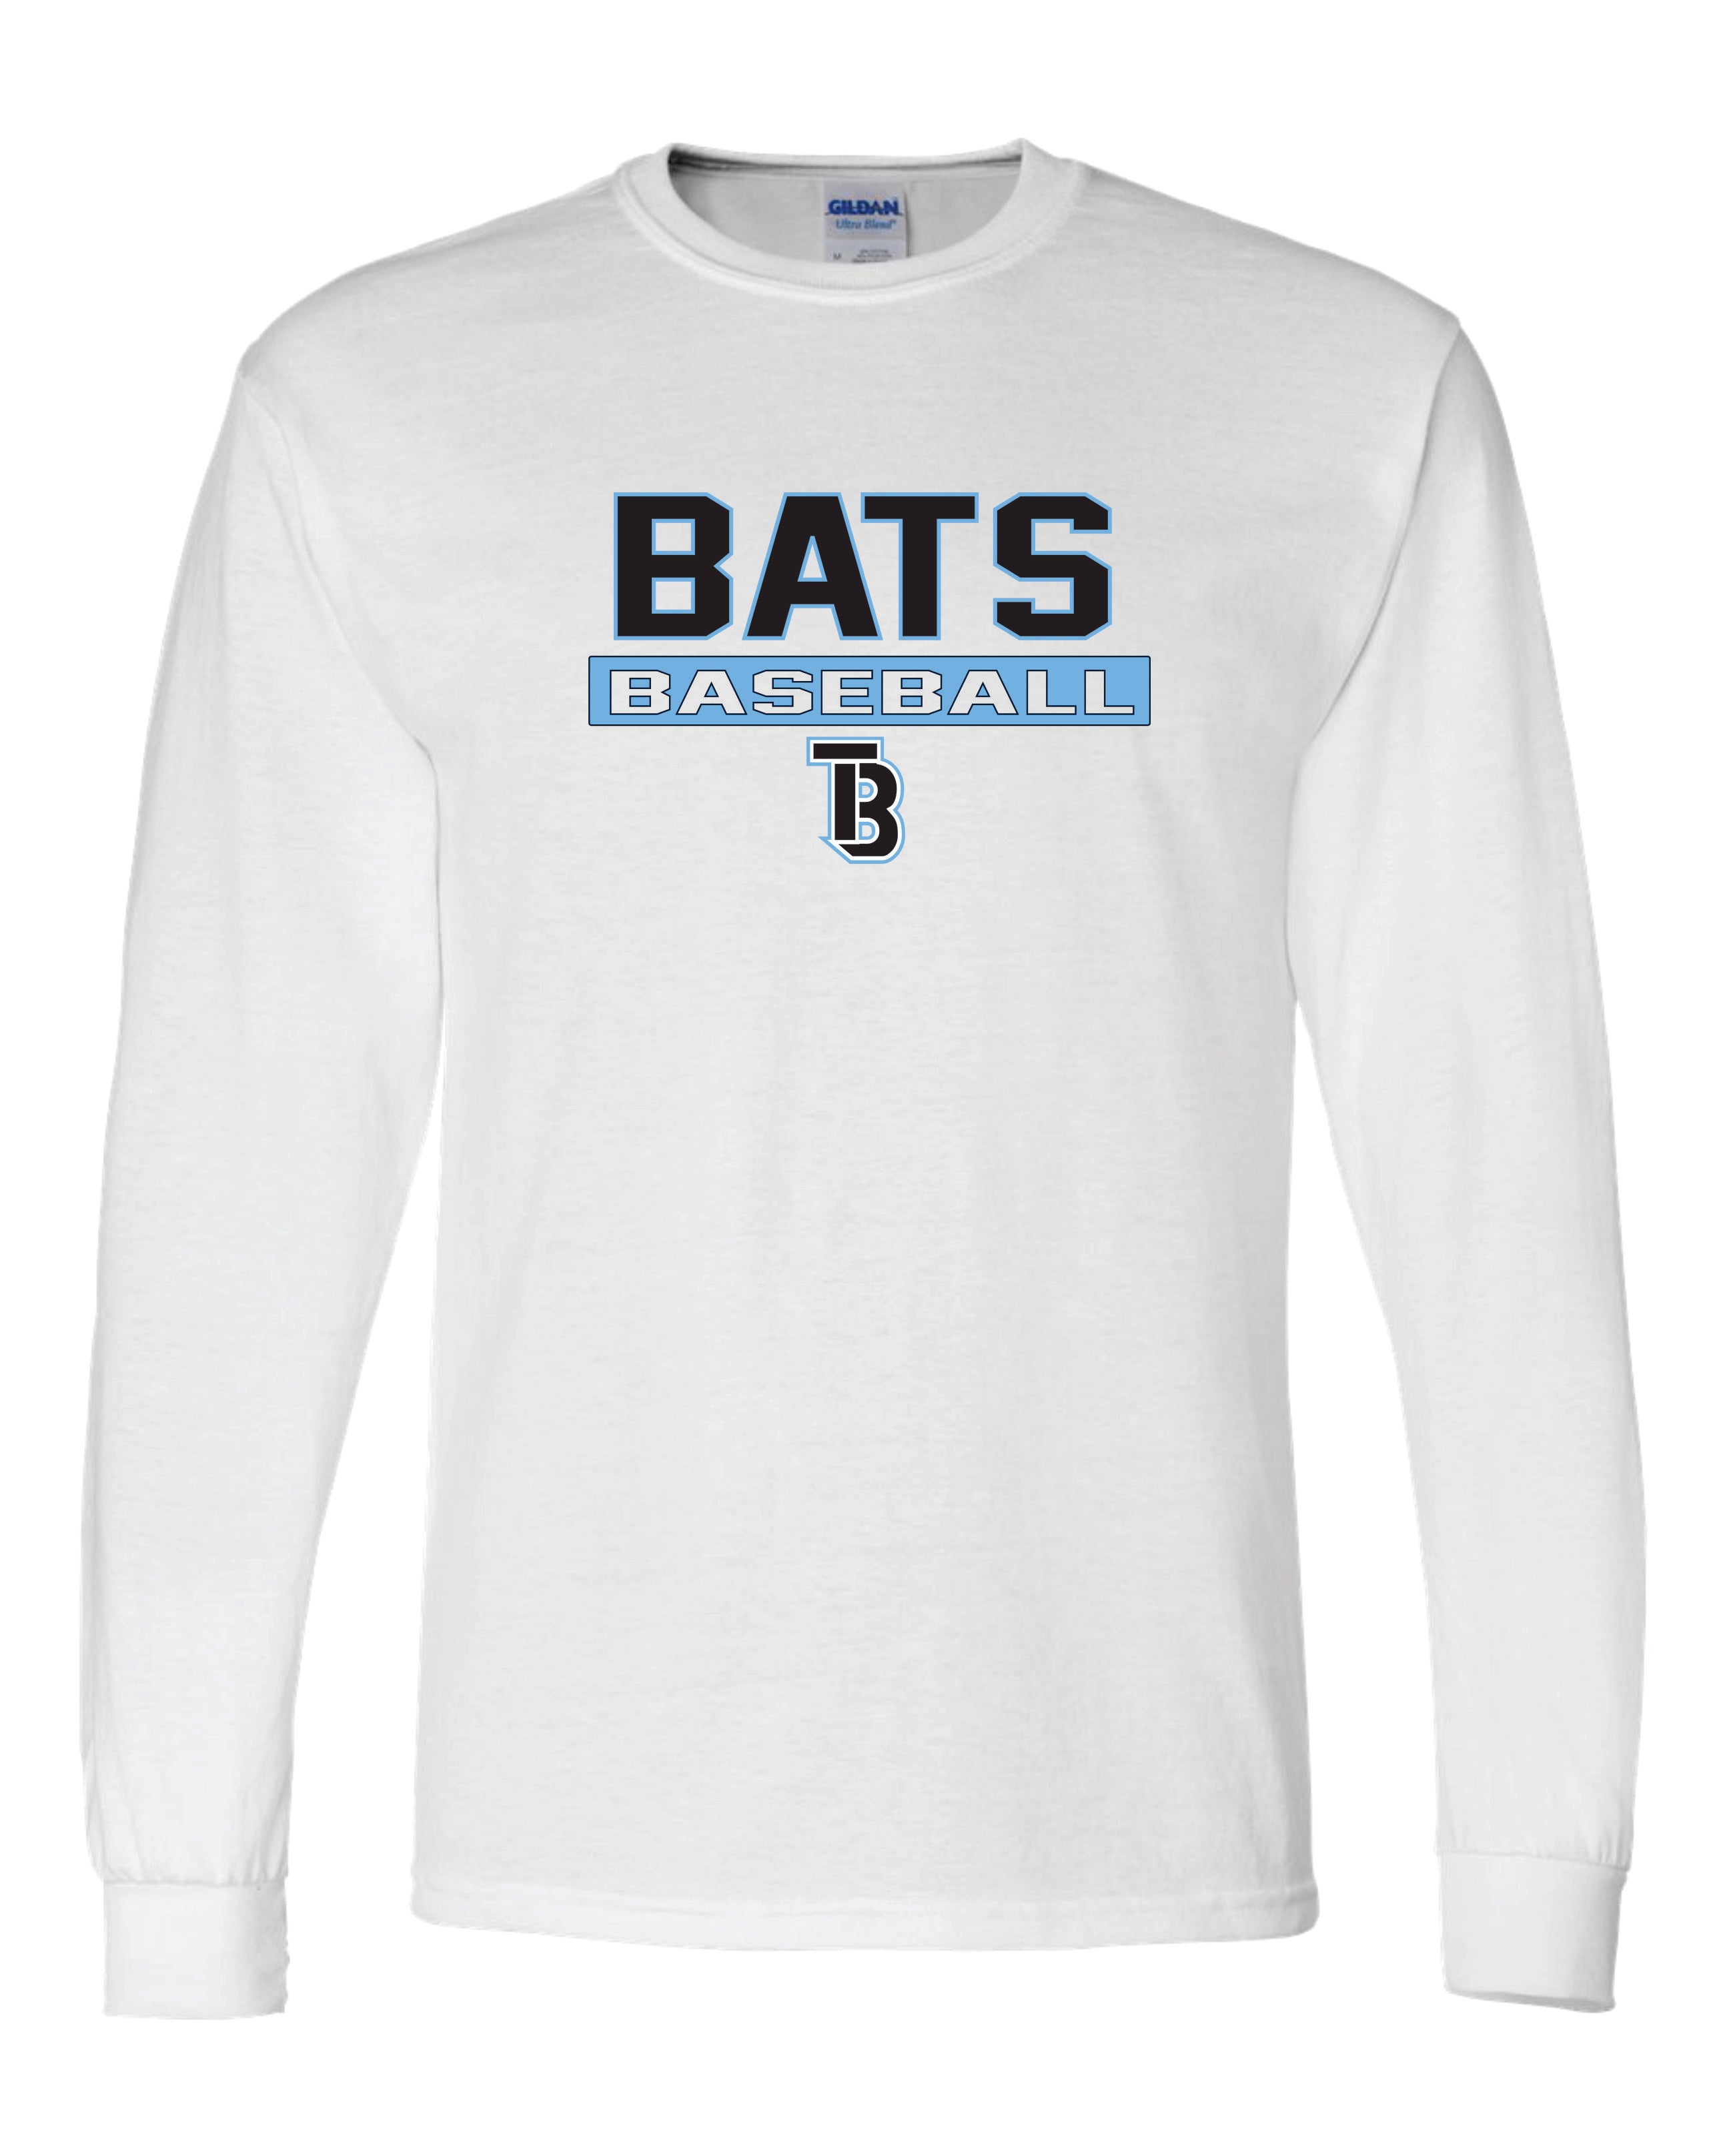 Tampa Bay Bats 50/50 Long Sleeve T-Shirts